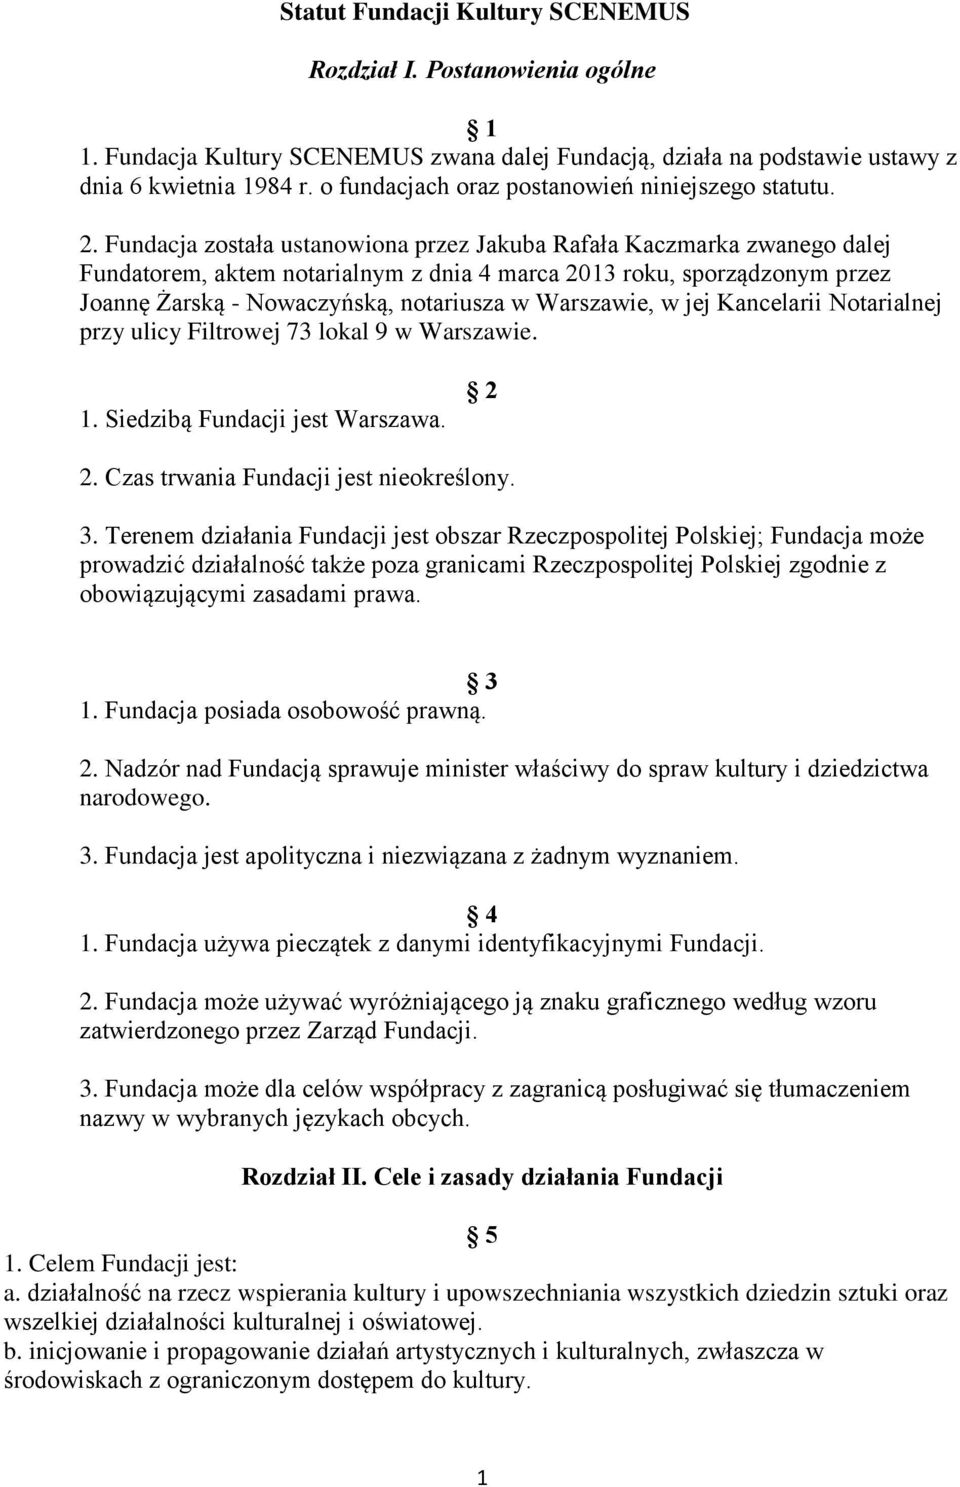 Fundacja została ustanowiona przez Jakuba Rafała Kaczmarka zwanego dalej Fundatorem, aktem notarialnym z dnia 4 marca 2013 roku, sporządzonym przez Joannę Żarską - Nowaczyńską, notariusza w